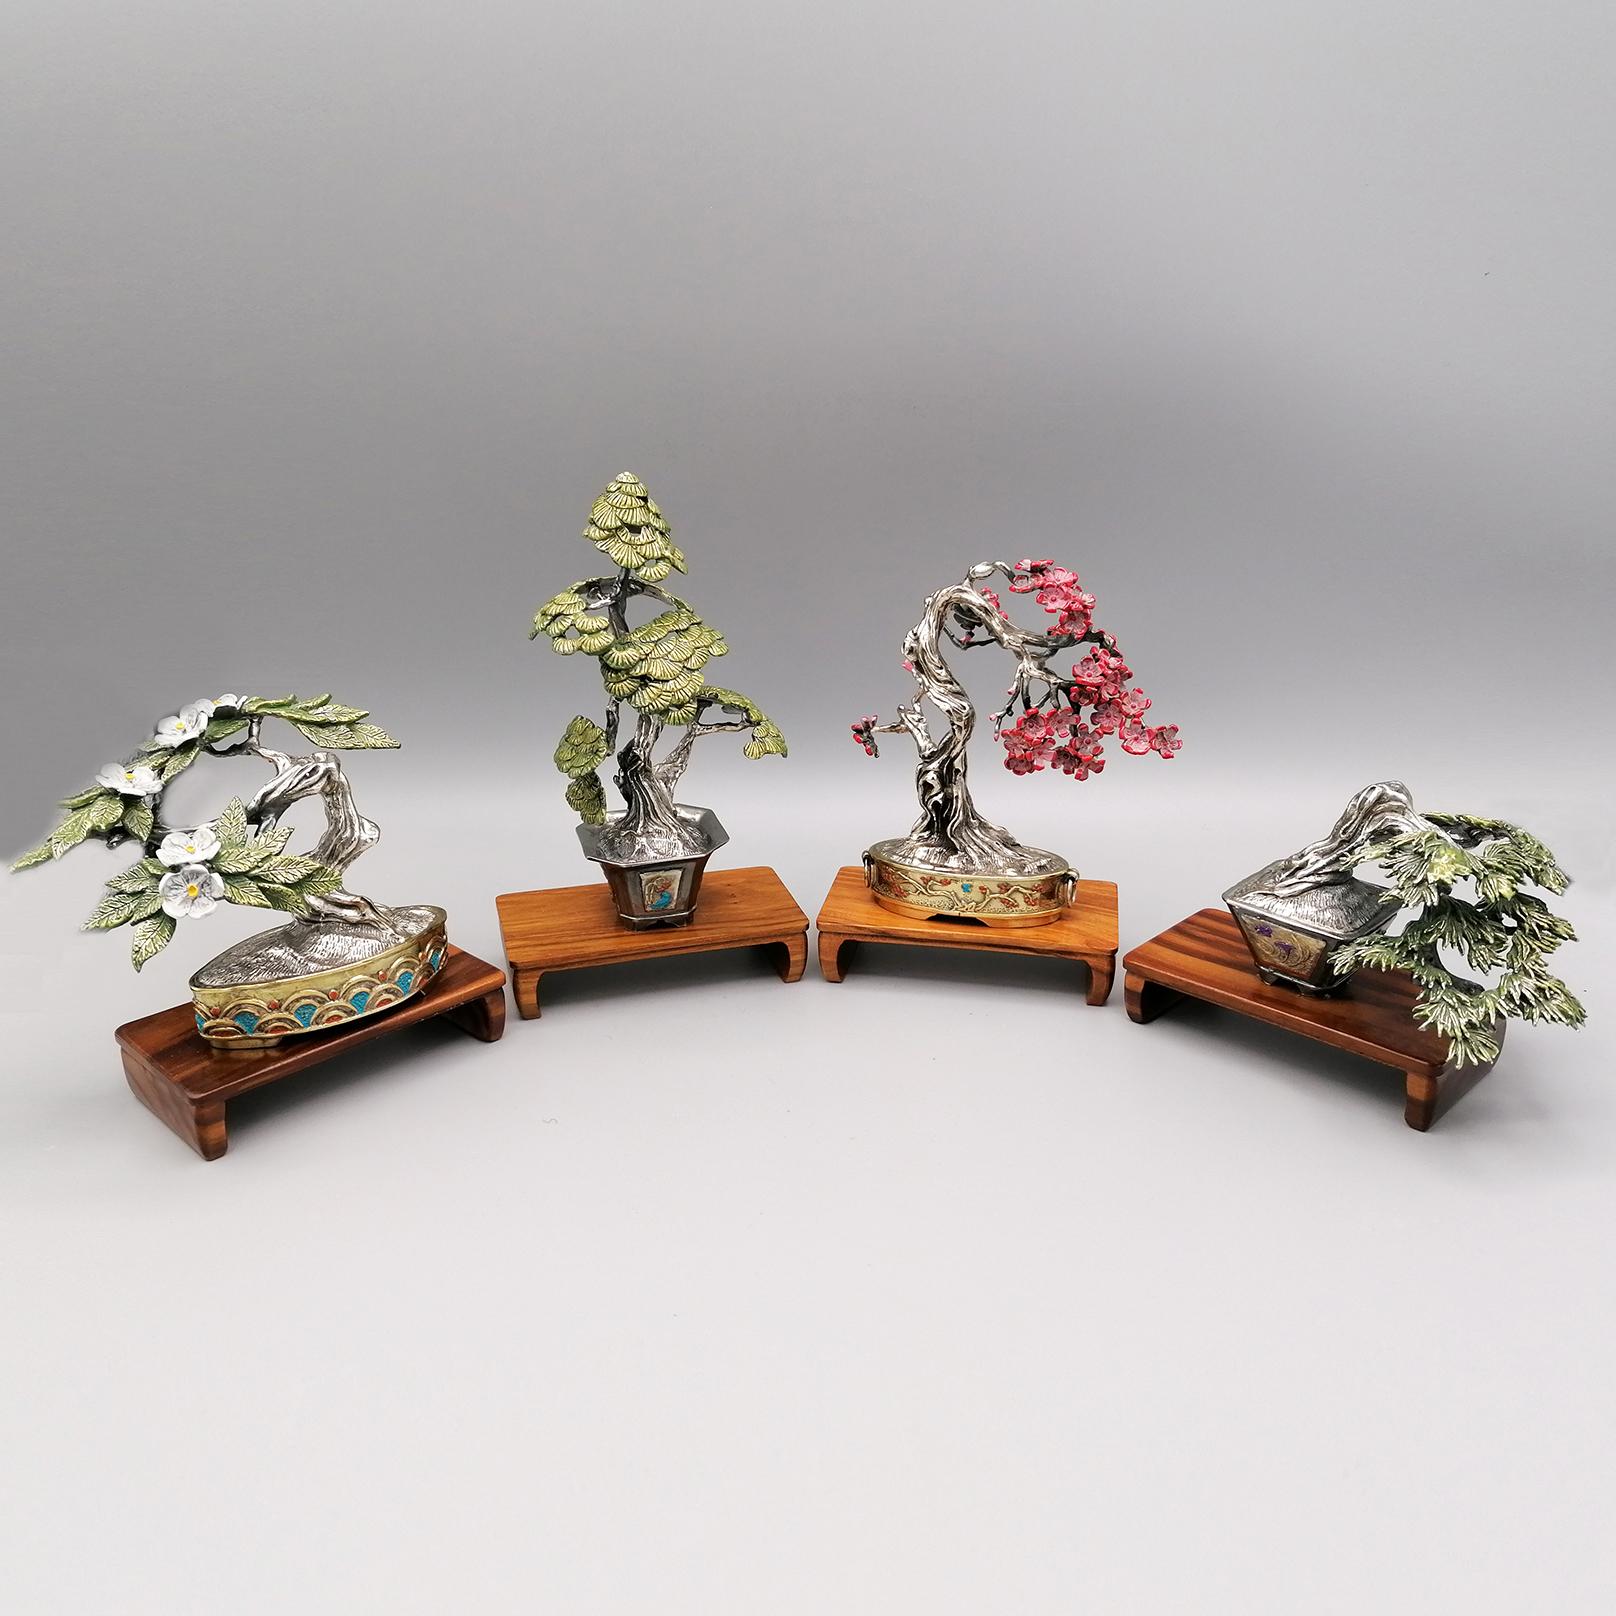 Collection de 4 miniatures de Bonsai en argent massif faites à la main, dorées, émaillées et brunies

1. Abricot japonais bonsaï gr. 220 cm. 6 x 10,5 H. 8,5
base en bois 5 x 9 H.2 cm.
2. Pin blanc du Japon gr. 200 cm. 7 x 5 H. 13
base en bois 5